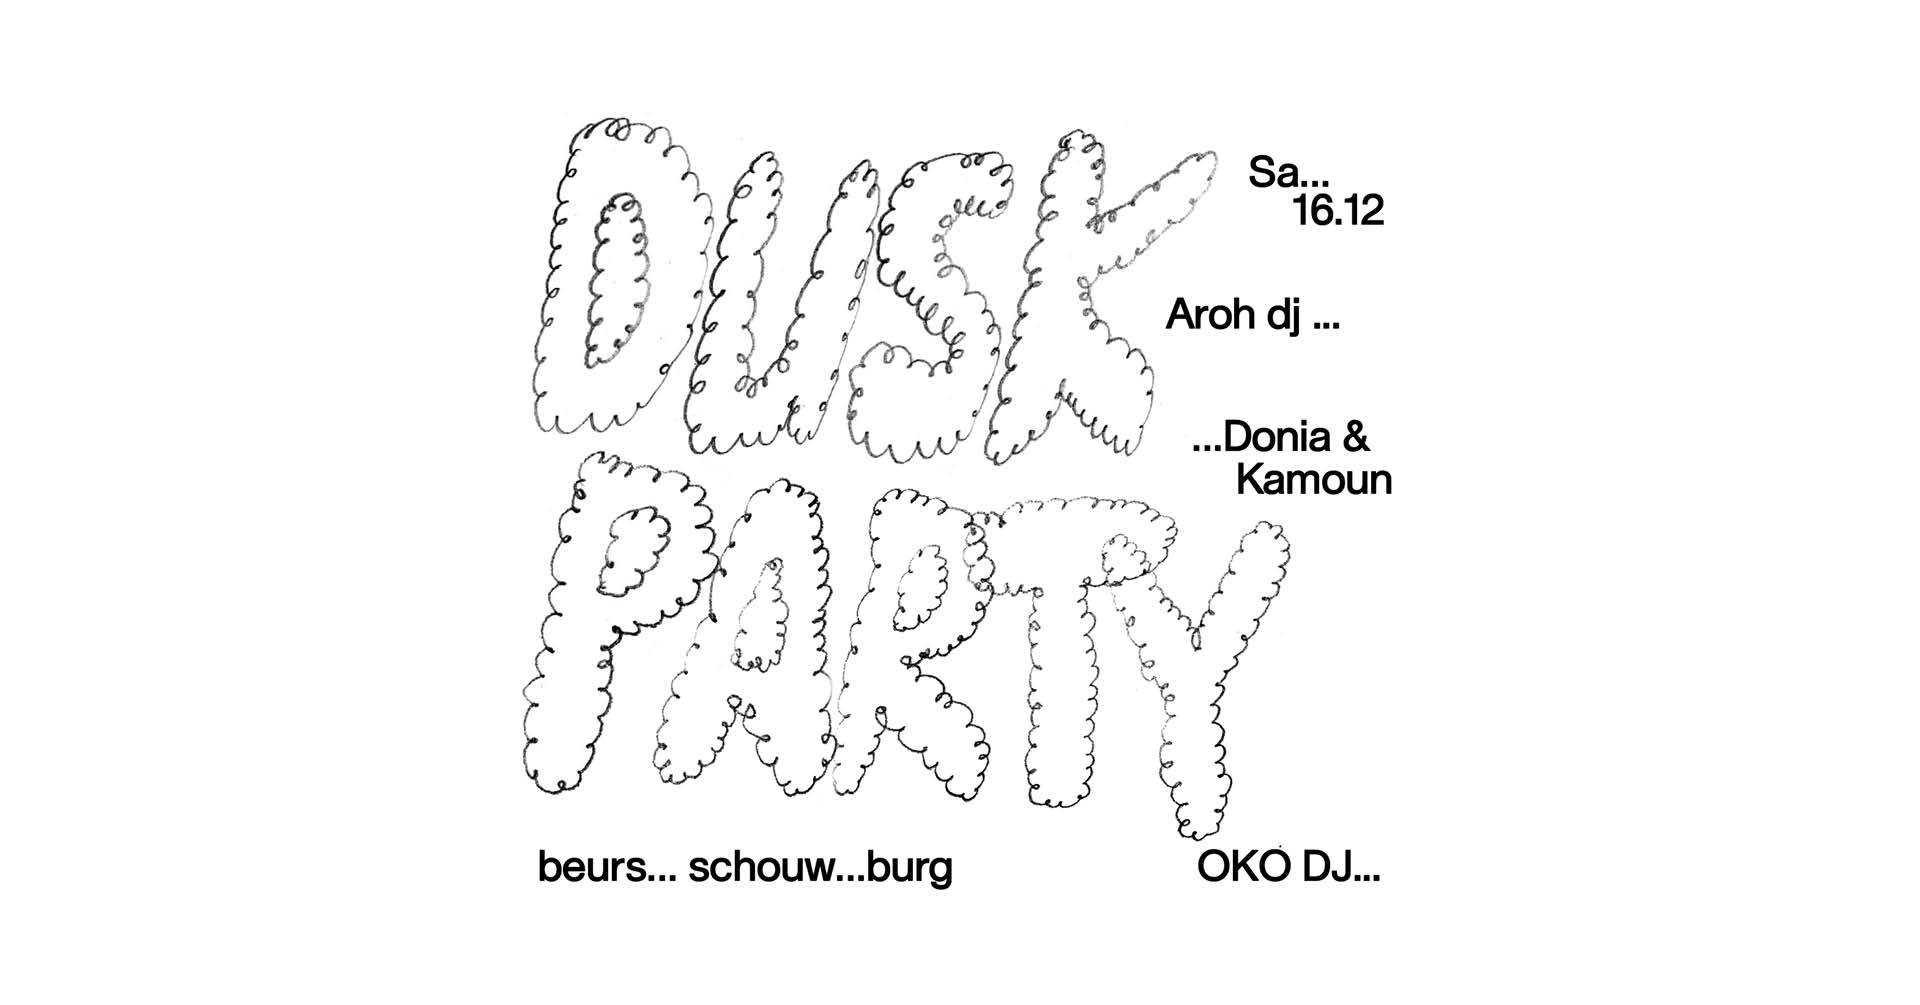 Dusk Party w/ OKO DJ, Aroh dj, Donia & Kamoun - Página frontal